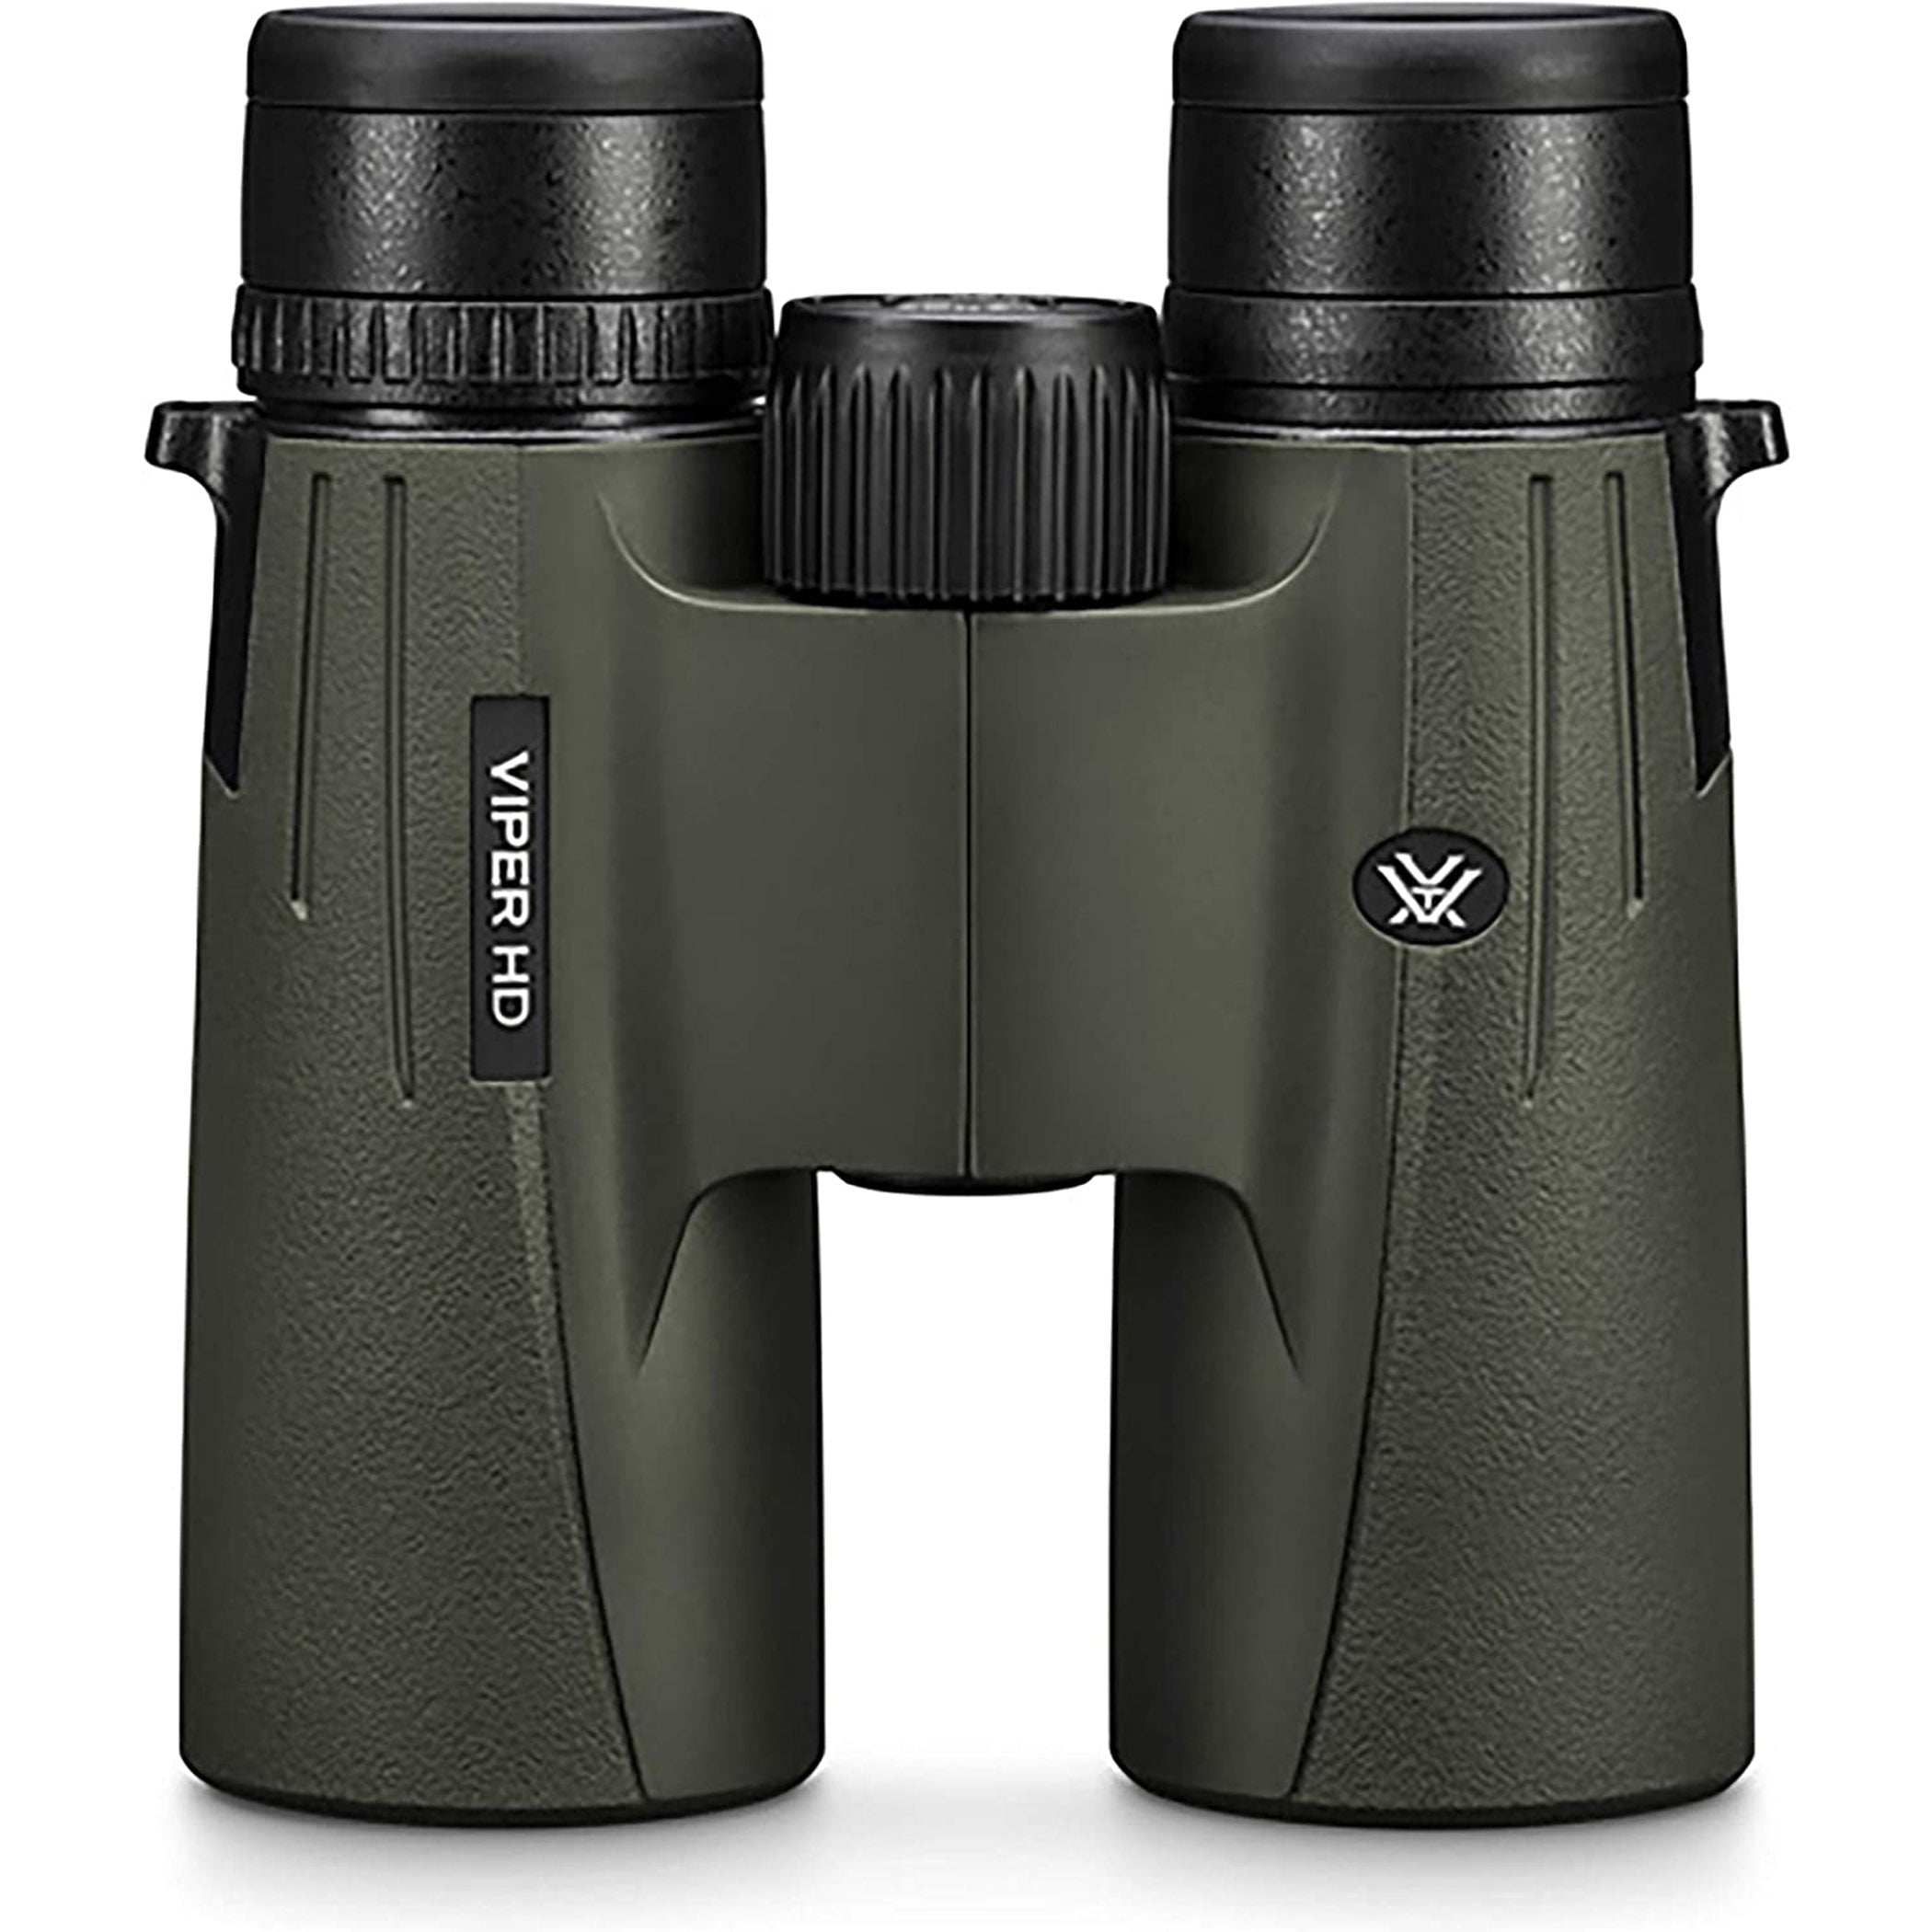 Vortex Viper® HD 10x42 Binoculars